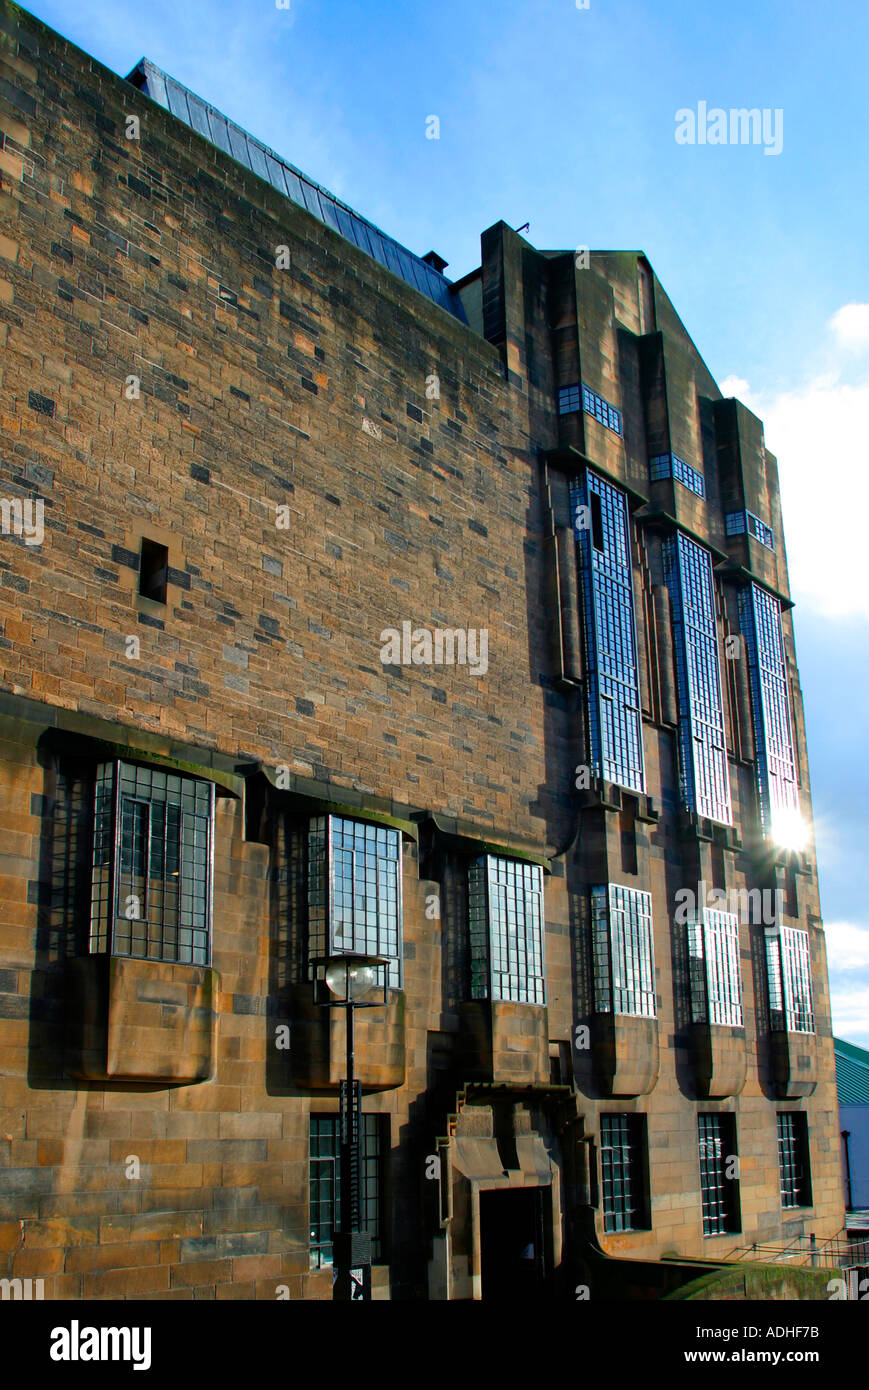 Glasgow School of Art by Charles Rennie Mackintosh Stock Photo